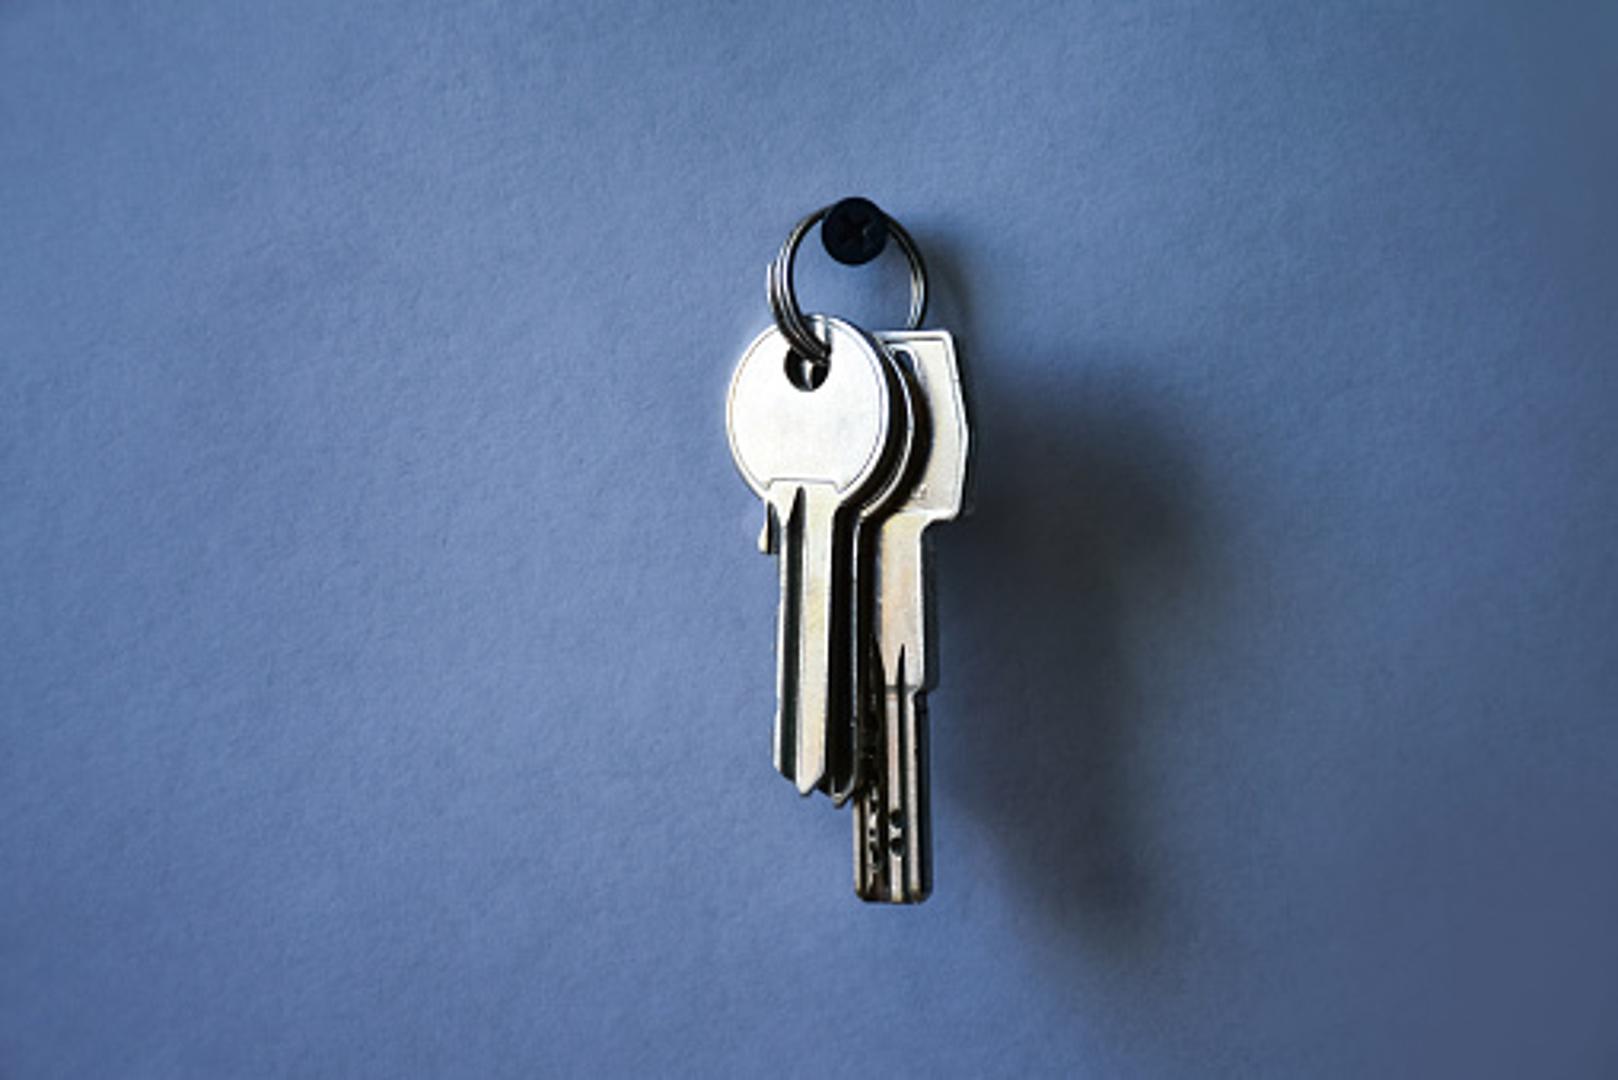 Ako stalno tražite koji je ključ od garaže, koji od stana i sl., uzmite neki lak za nokte u boji i obojite ključeve kako biste ih ubuduće mogli lakše raspoznavati.